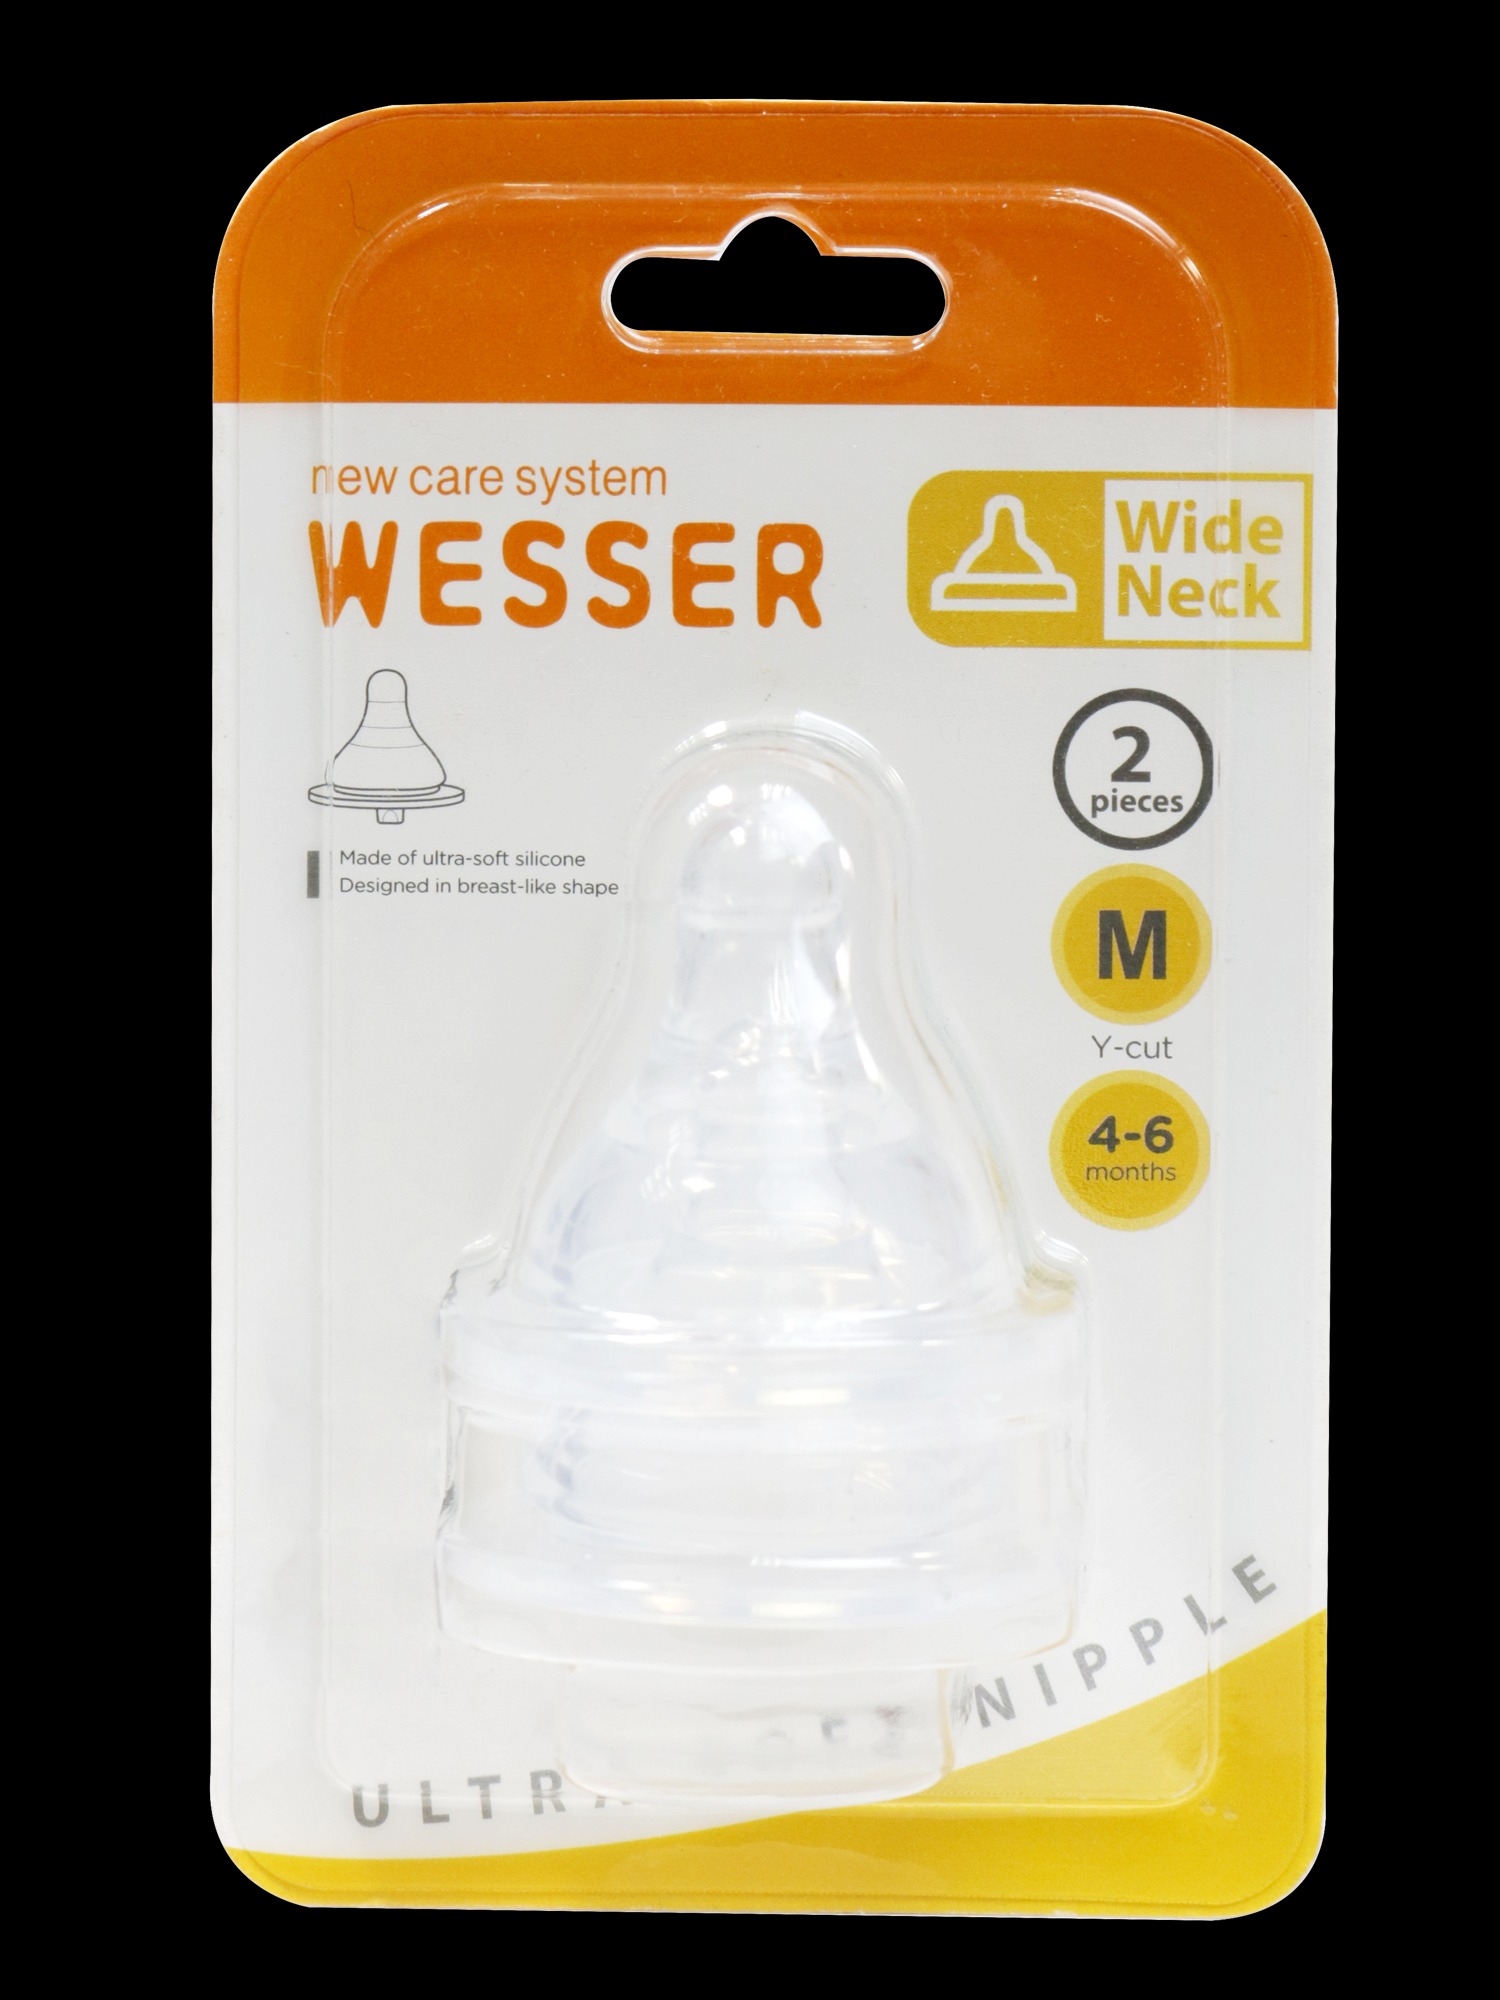 Ty bình sữa Wesser cổ rộng size M - 2 cái vỹ